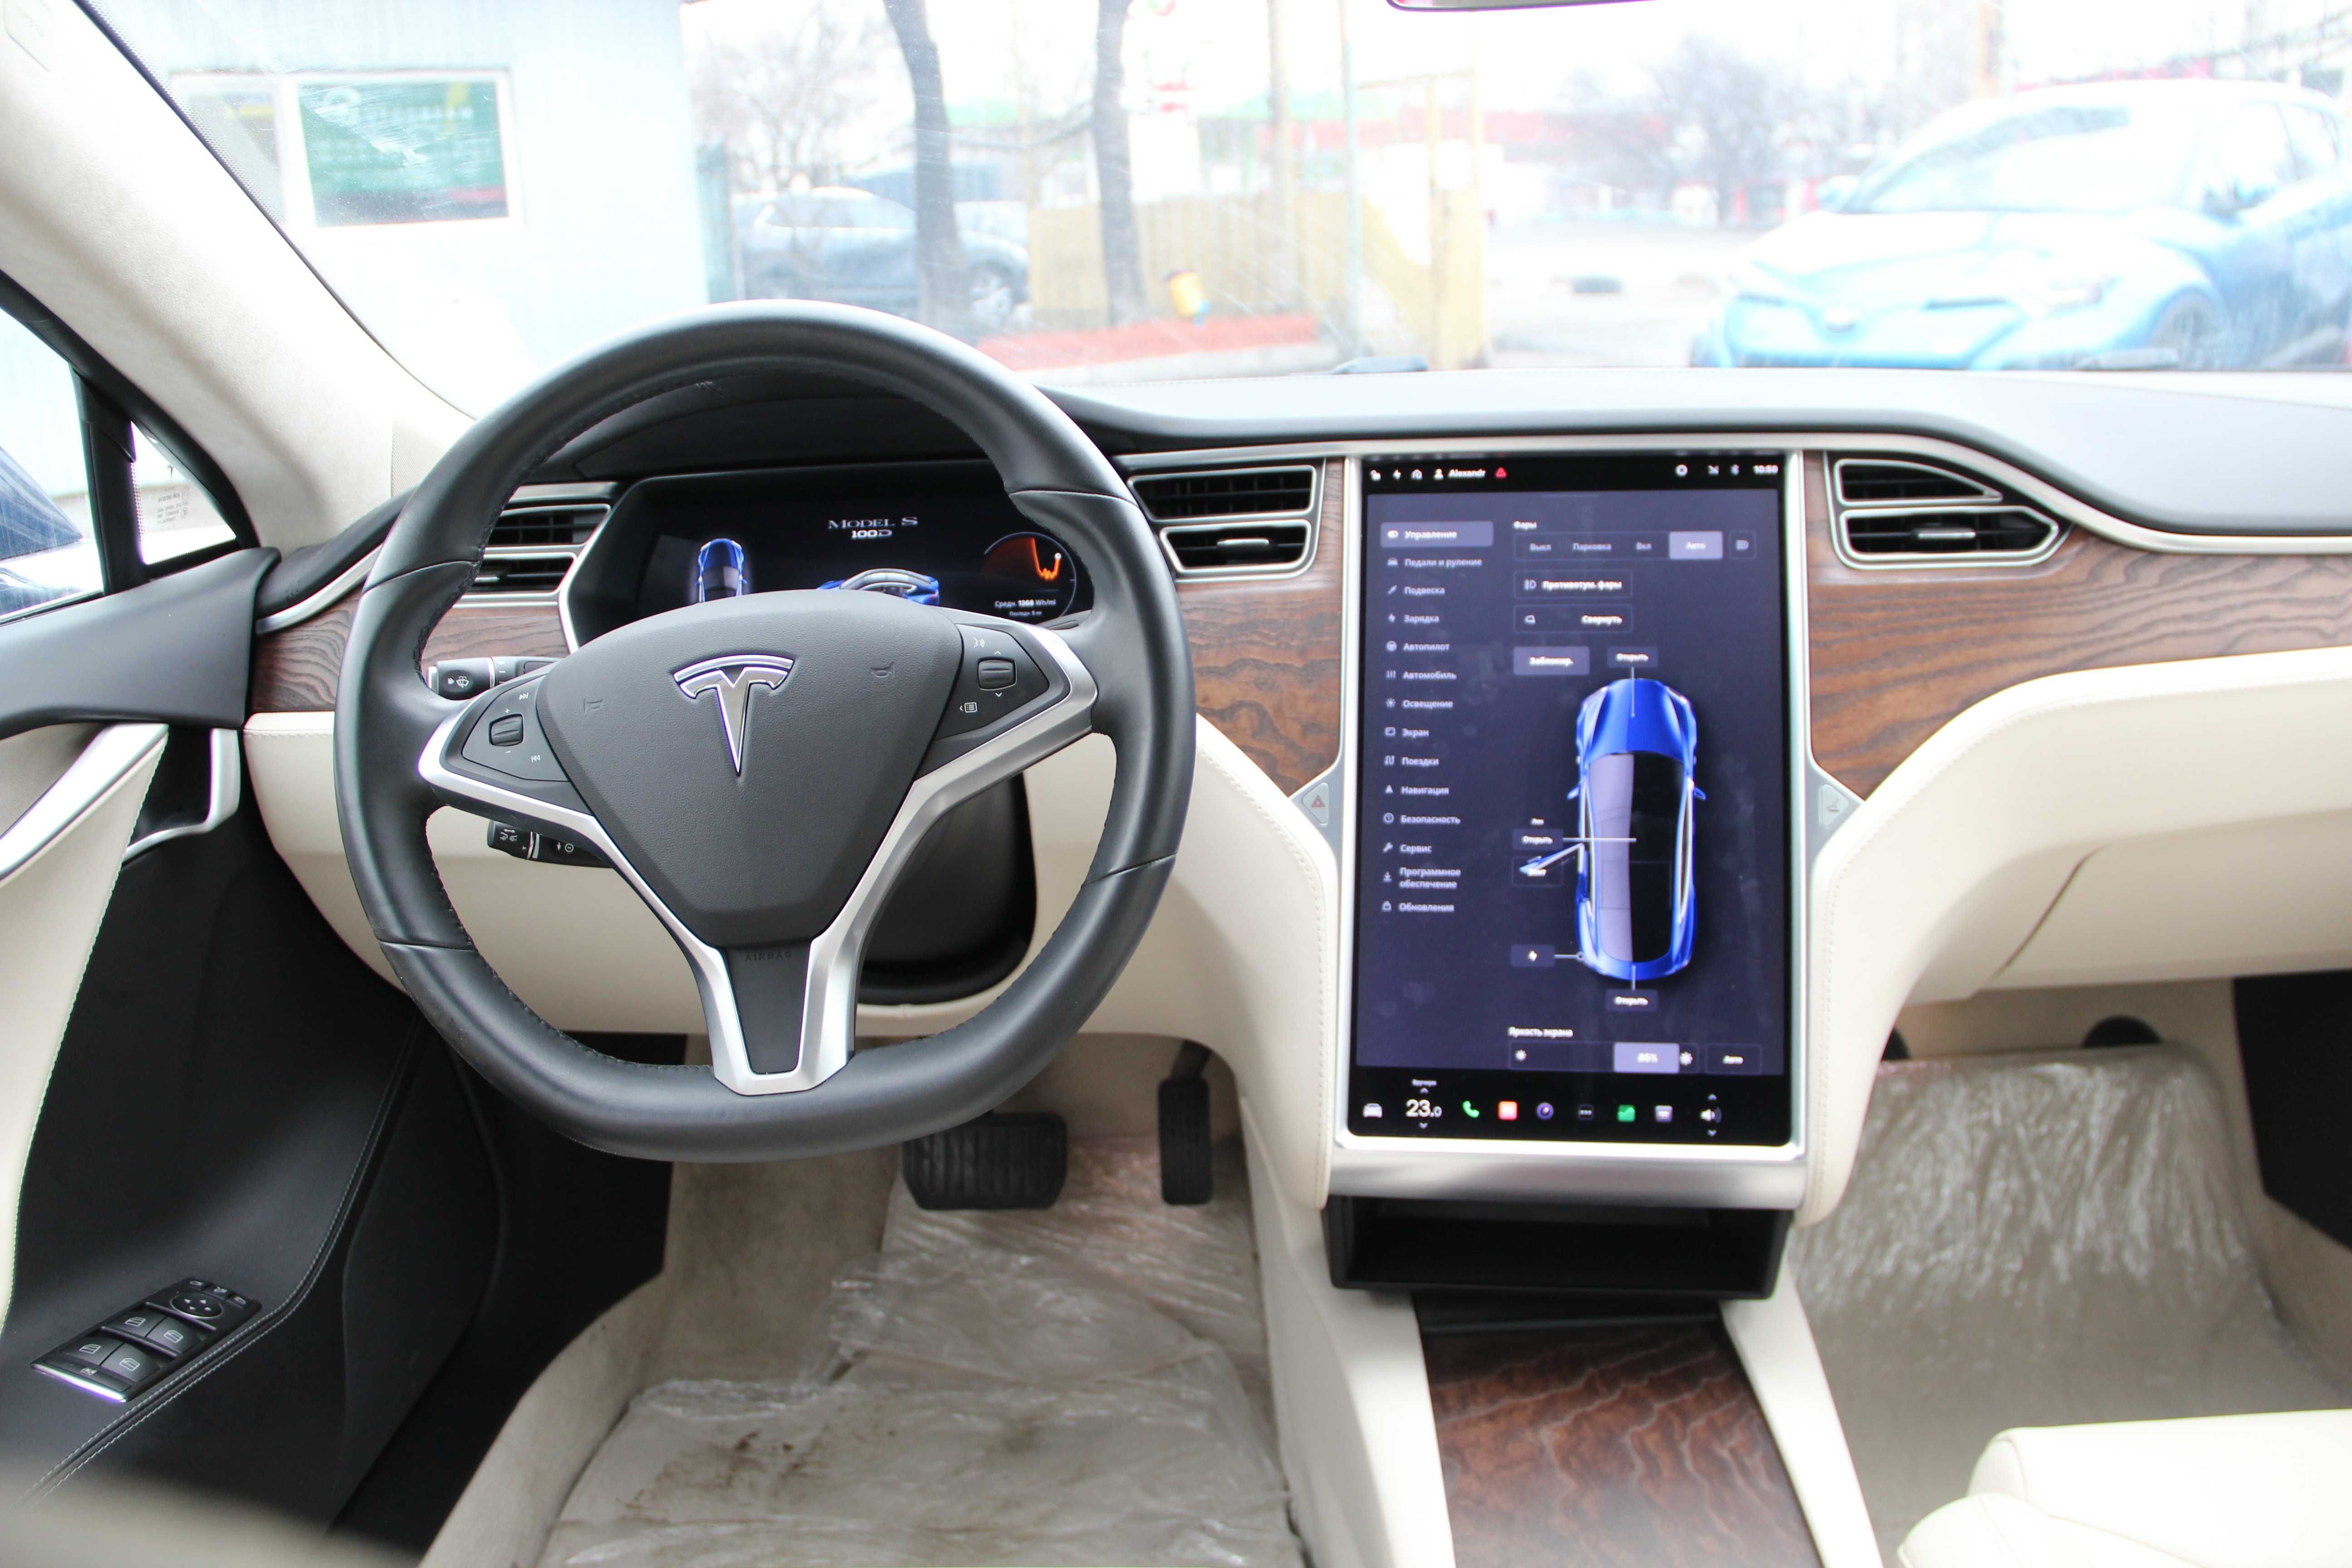 Tesla Model S 100 D , 2017 год, 100 кВт батарея, Тесла Модел С100Д